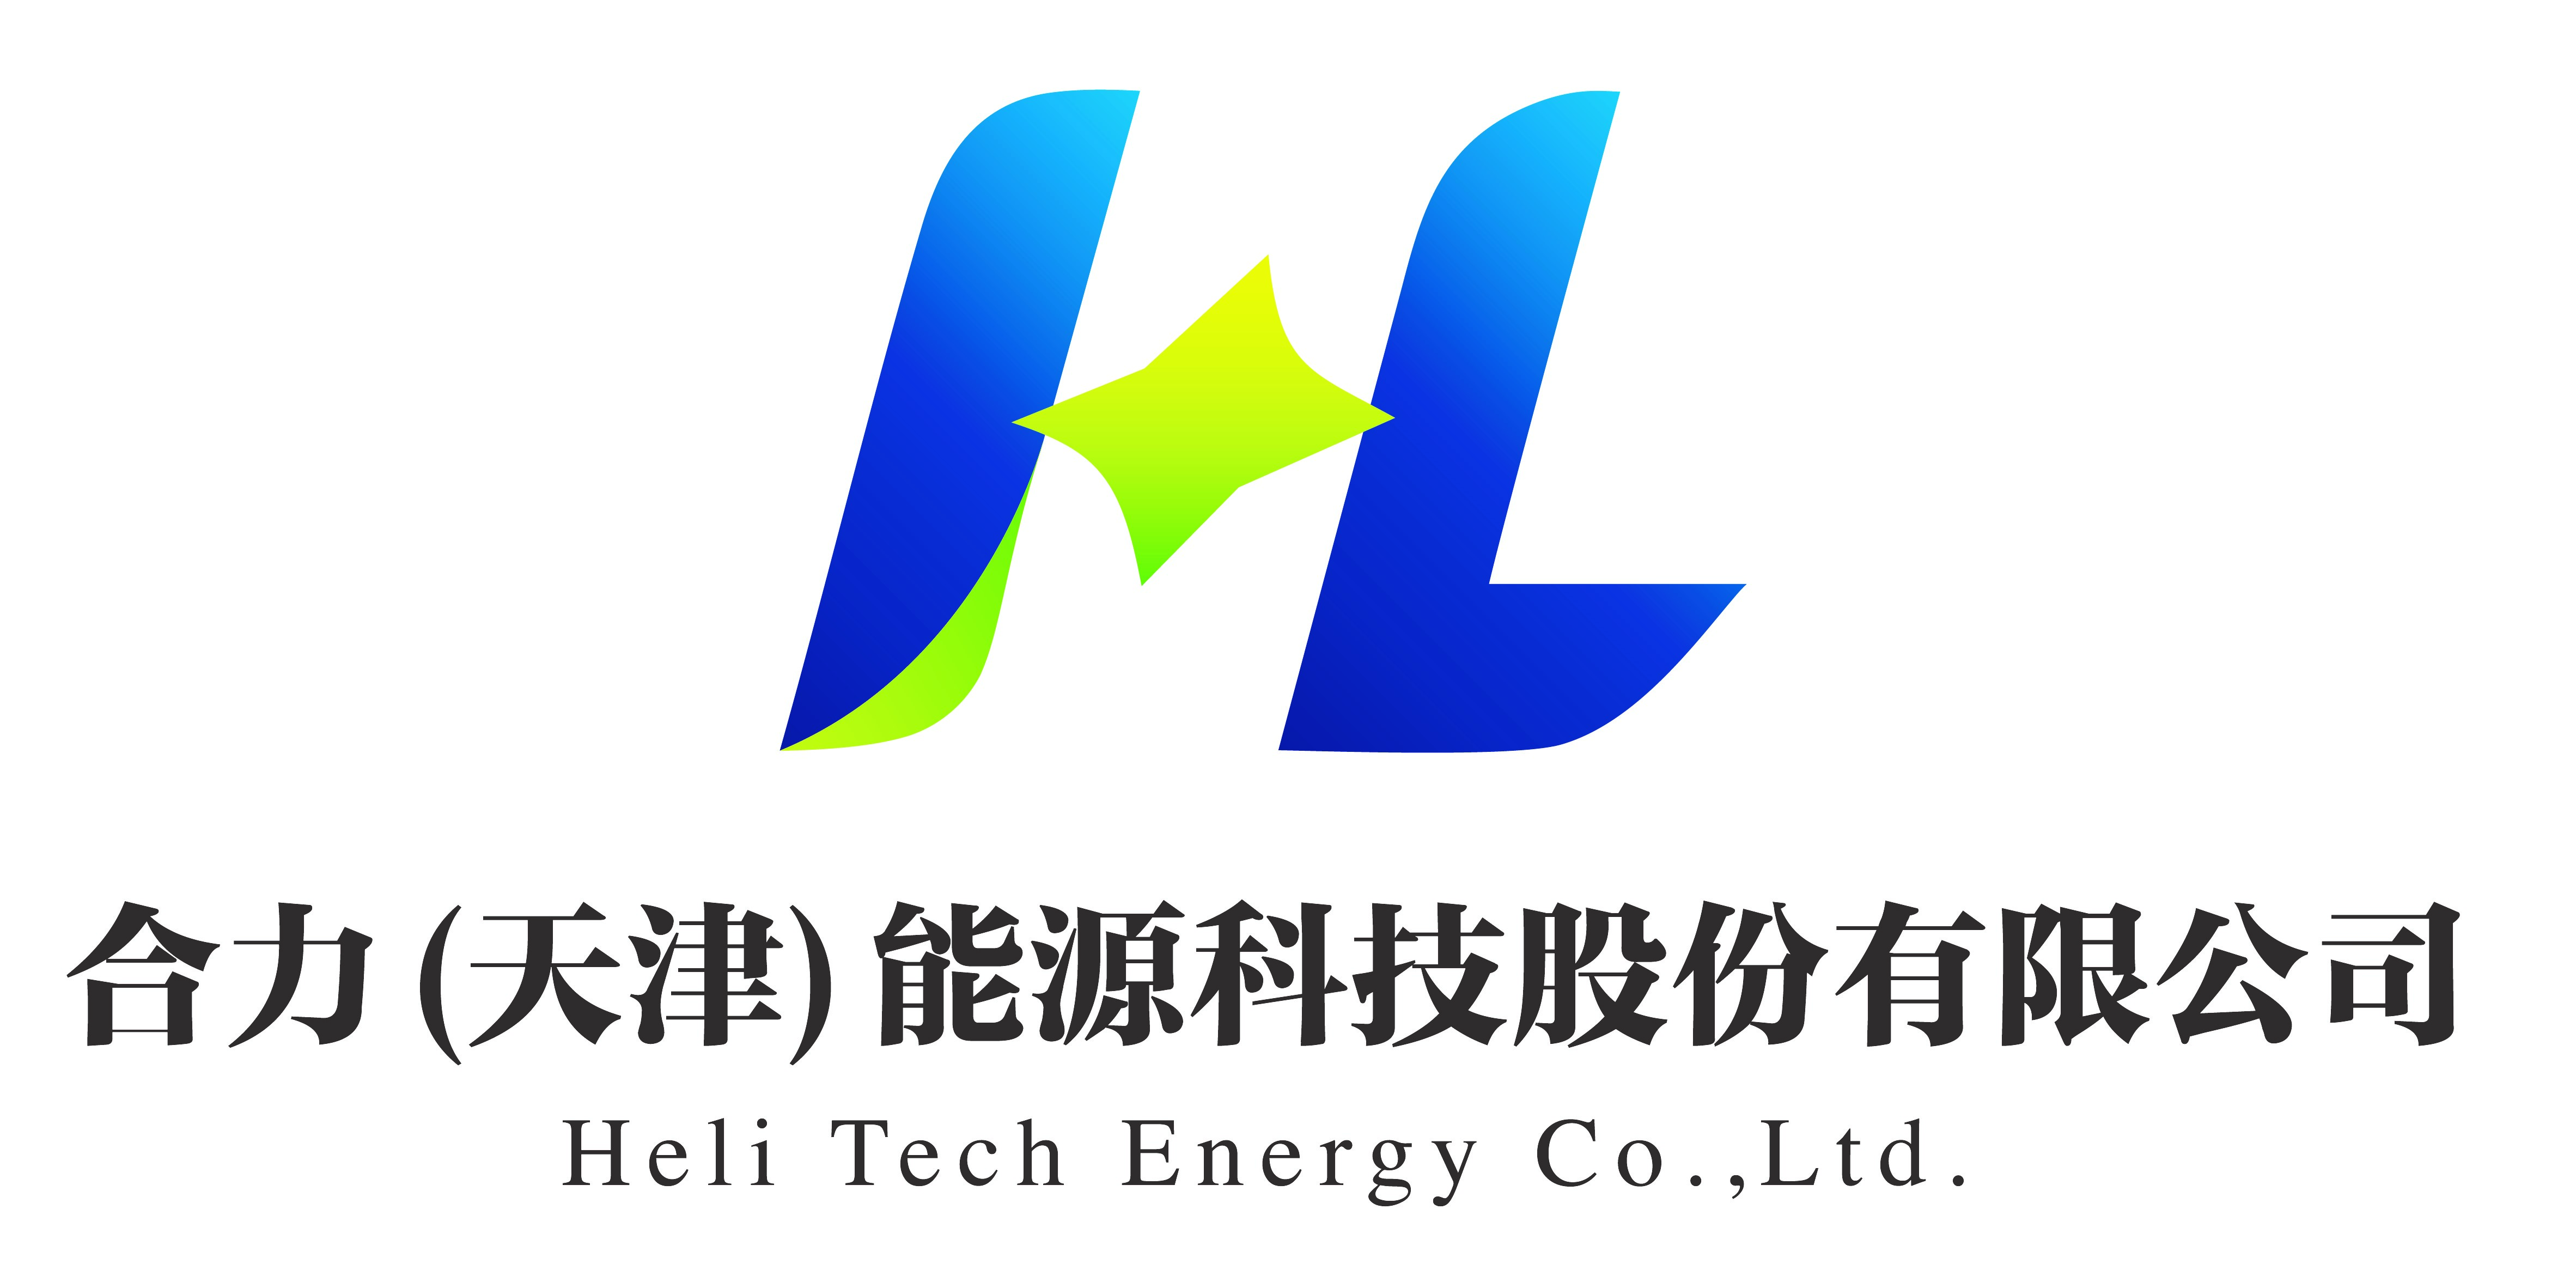 面试公司信息合力(天津)能源科技股份有限公司总部位于天津市滨海新区